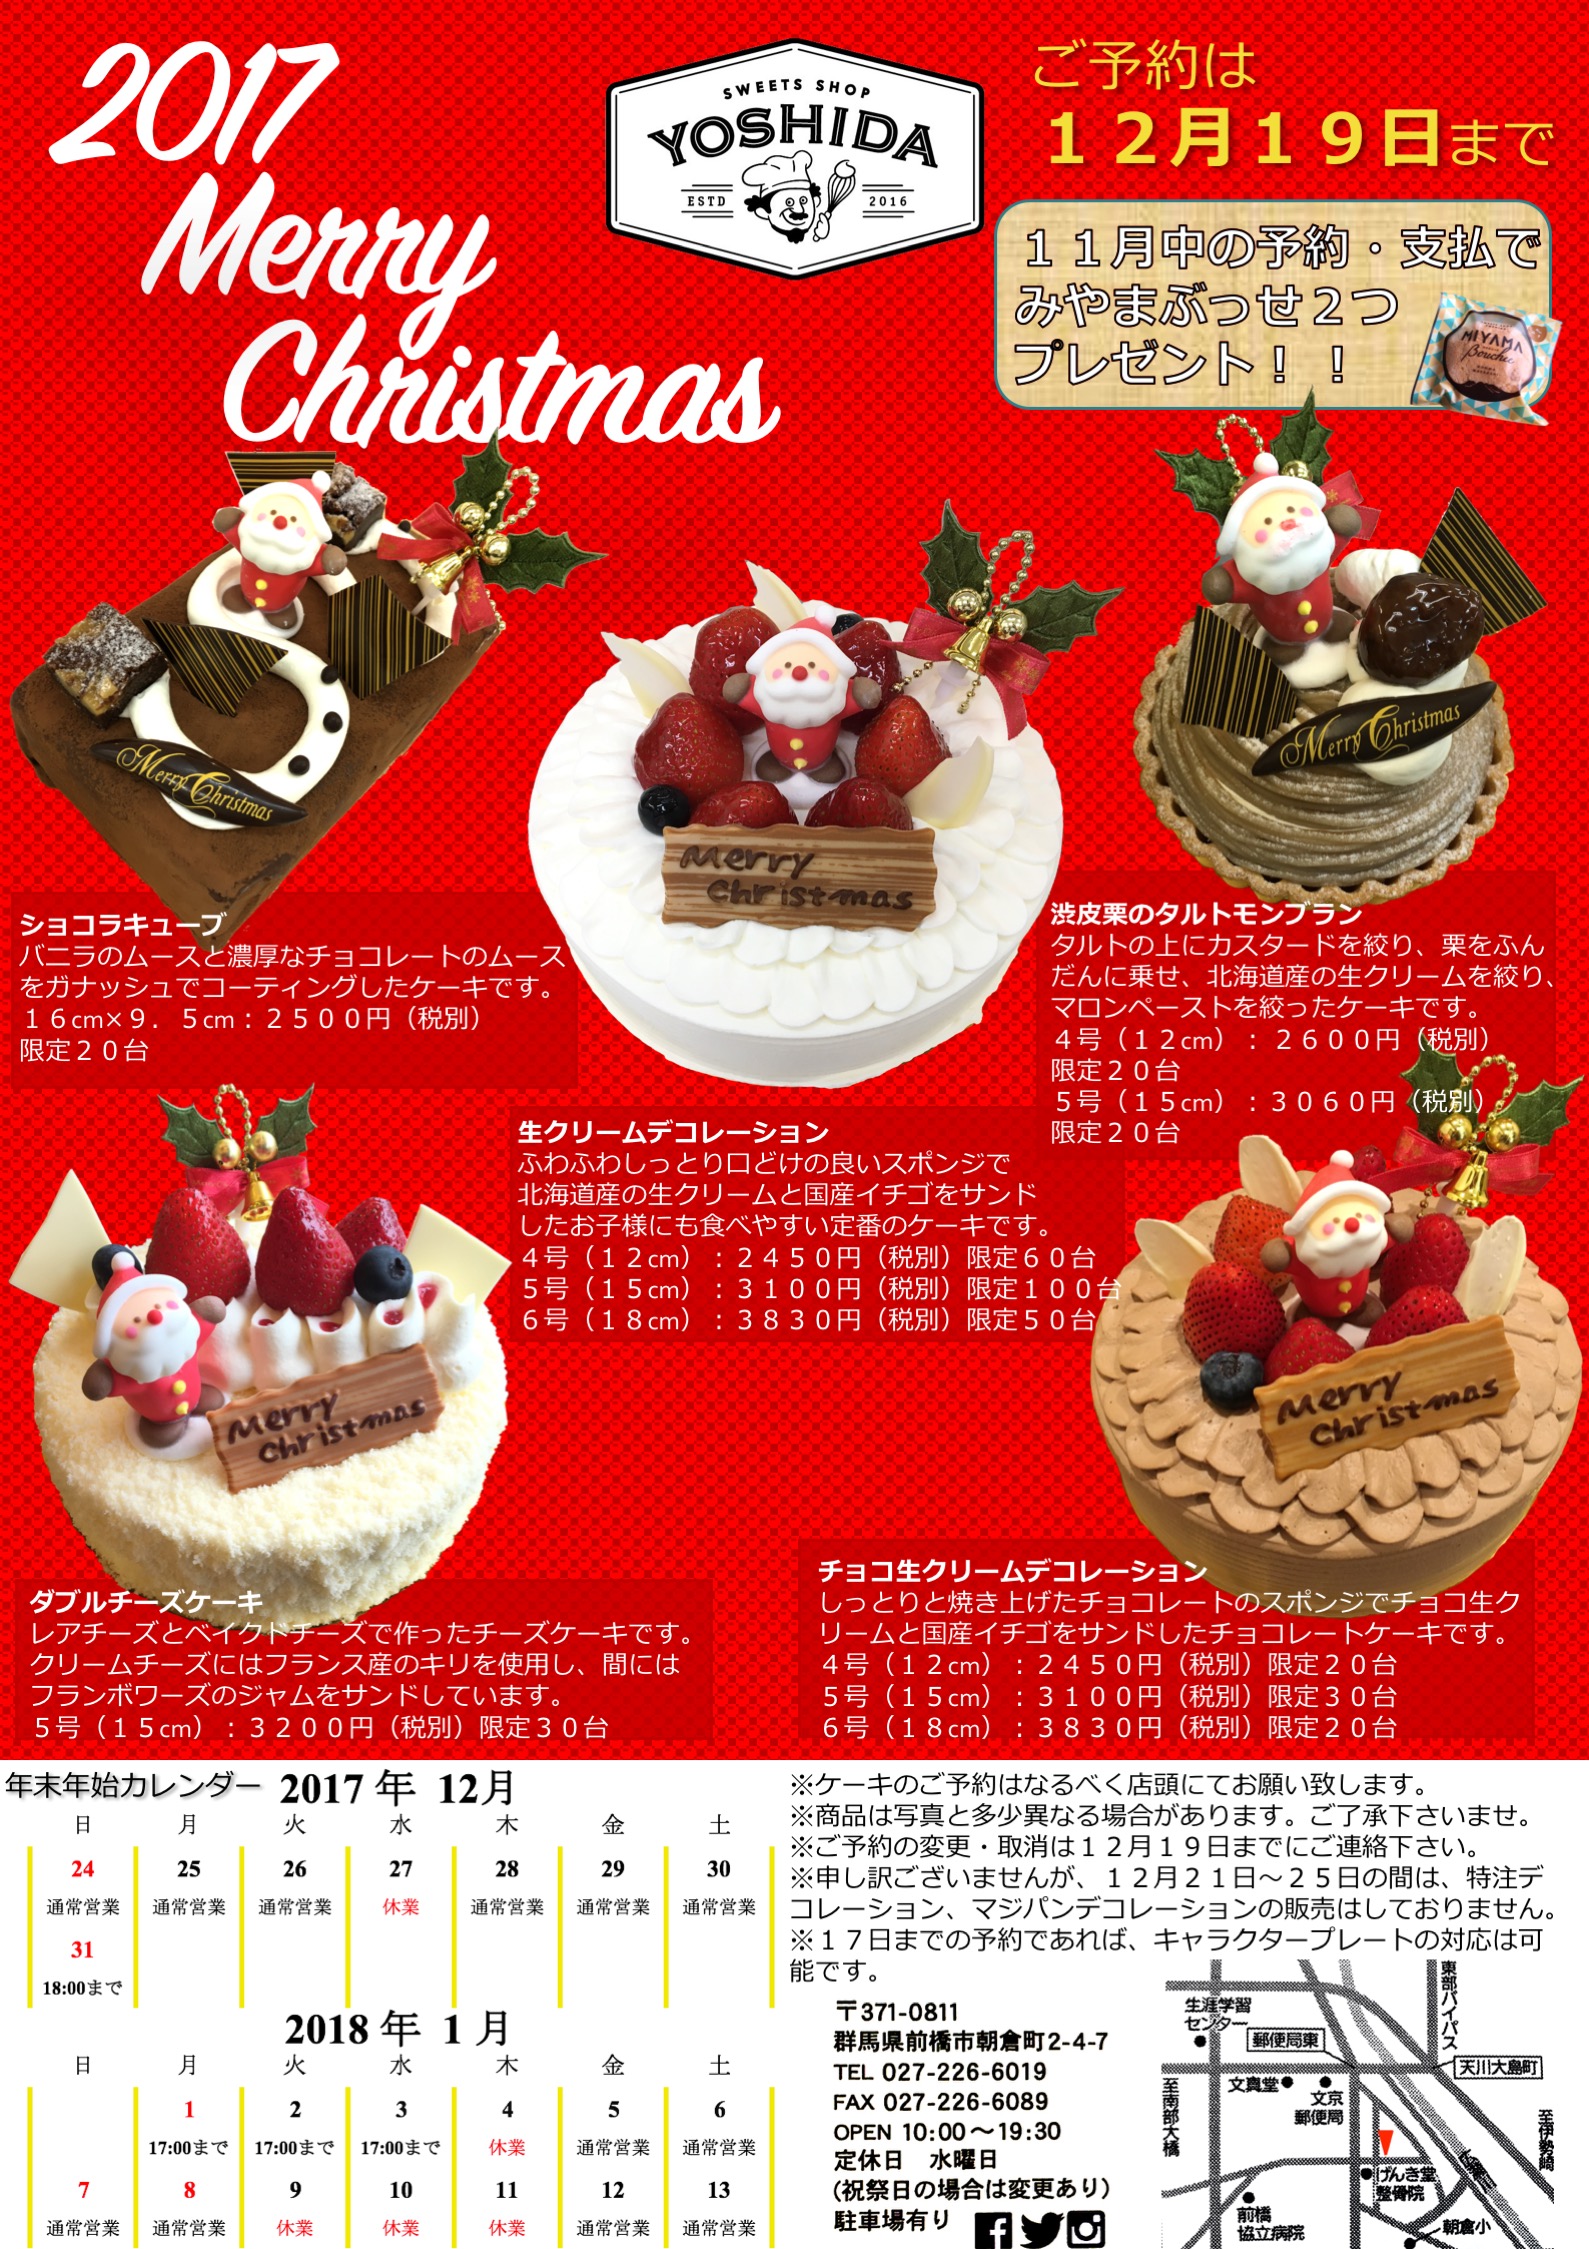 クリスマスケーキの予約開始 Sweets Shop Yoshida スイーツショップ ヨシダ